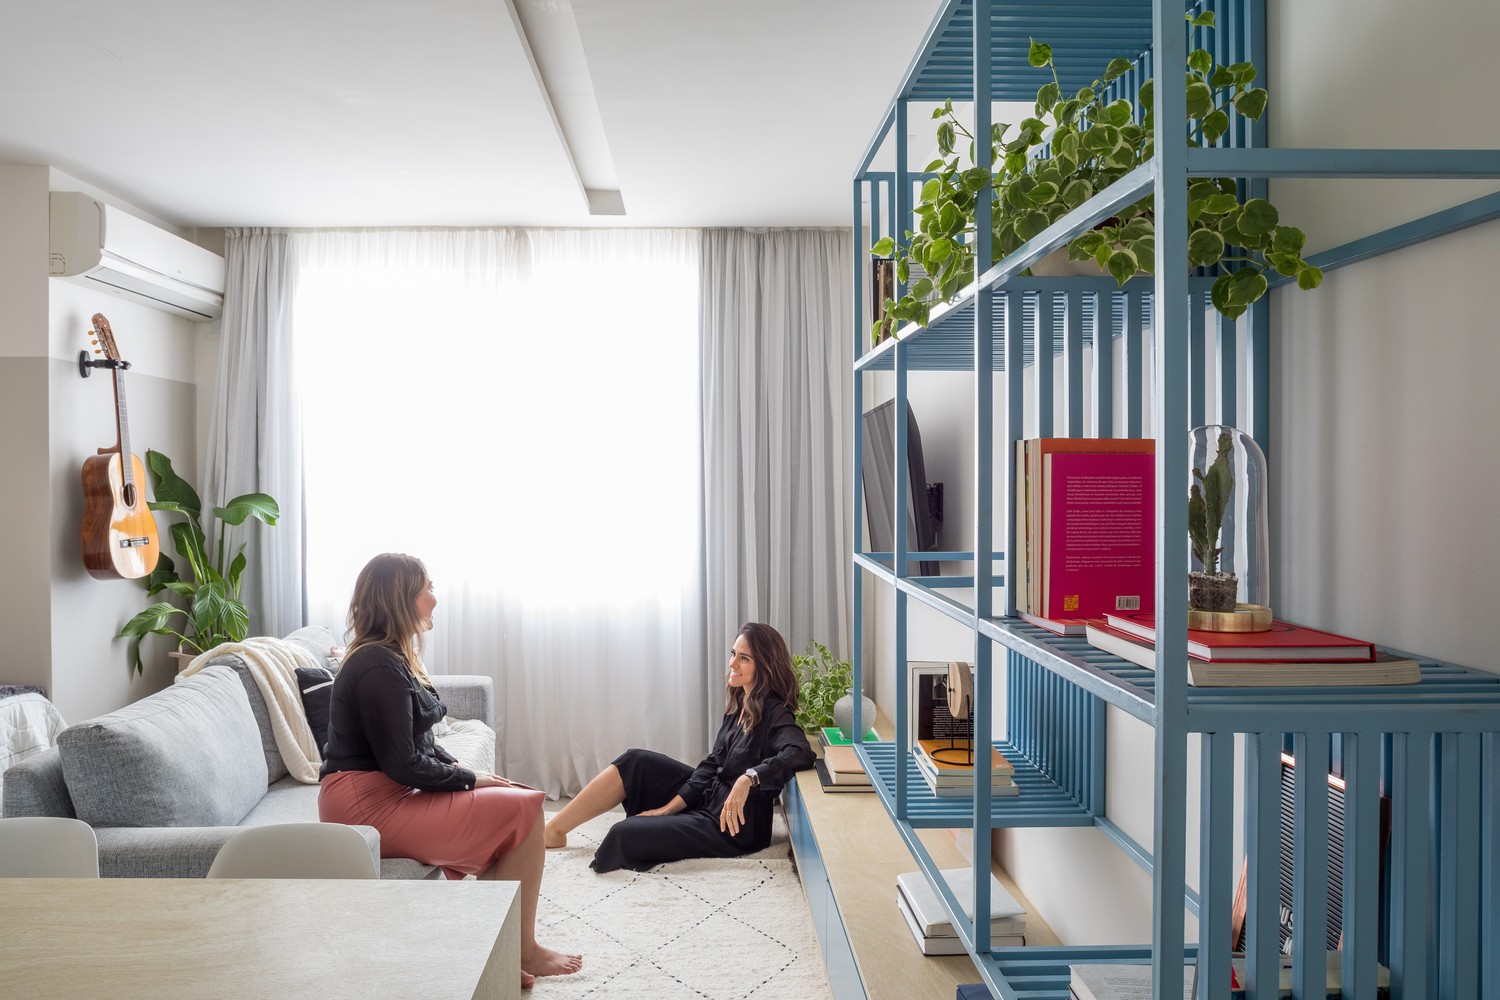 Hãy để không gian này trở nên linh hoạt hơn để có thể tối ưu hóa diện tích, đặc biệt là trong những ngôi nhà hay căn hộ vừa và nhỏ.